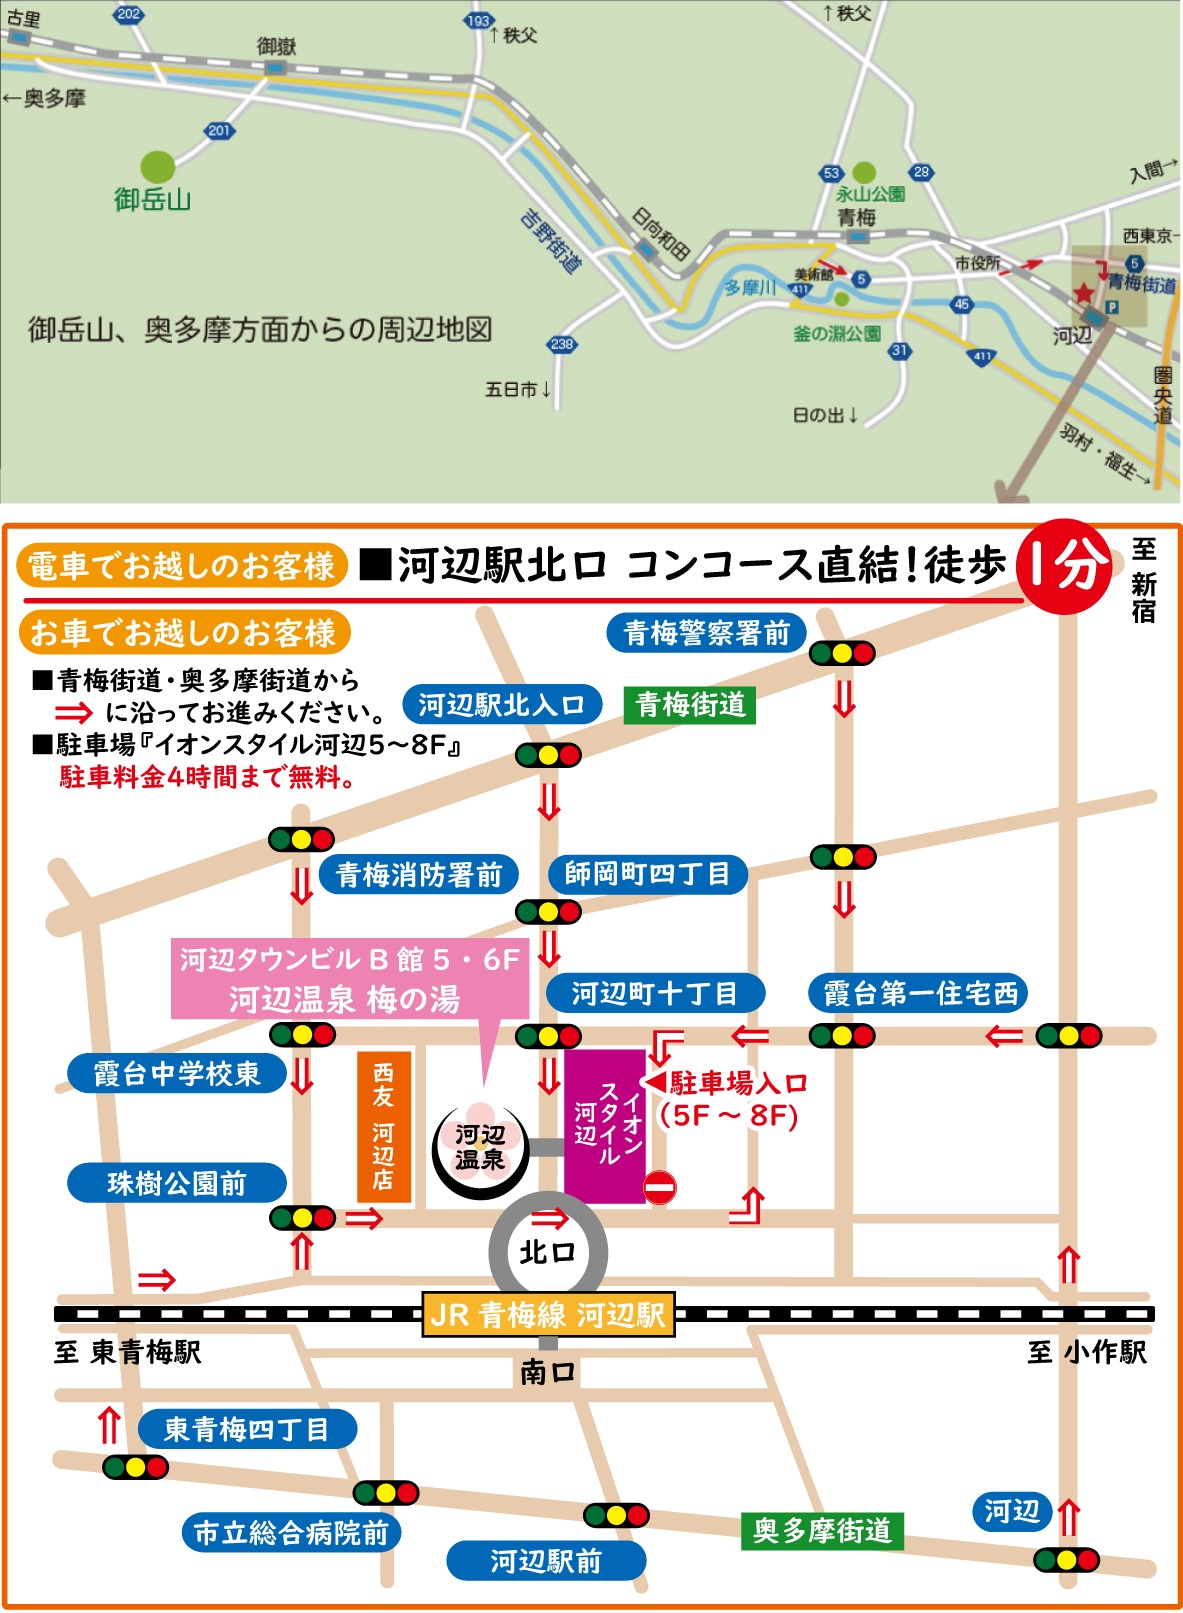 アクセス 御岳山 御岳山(東京)への電車とバスでのアクセス方法